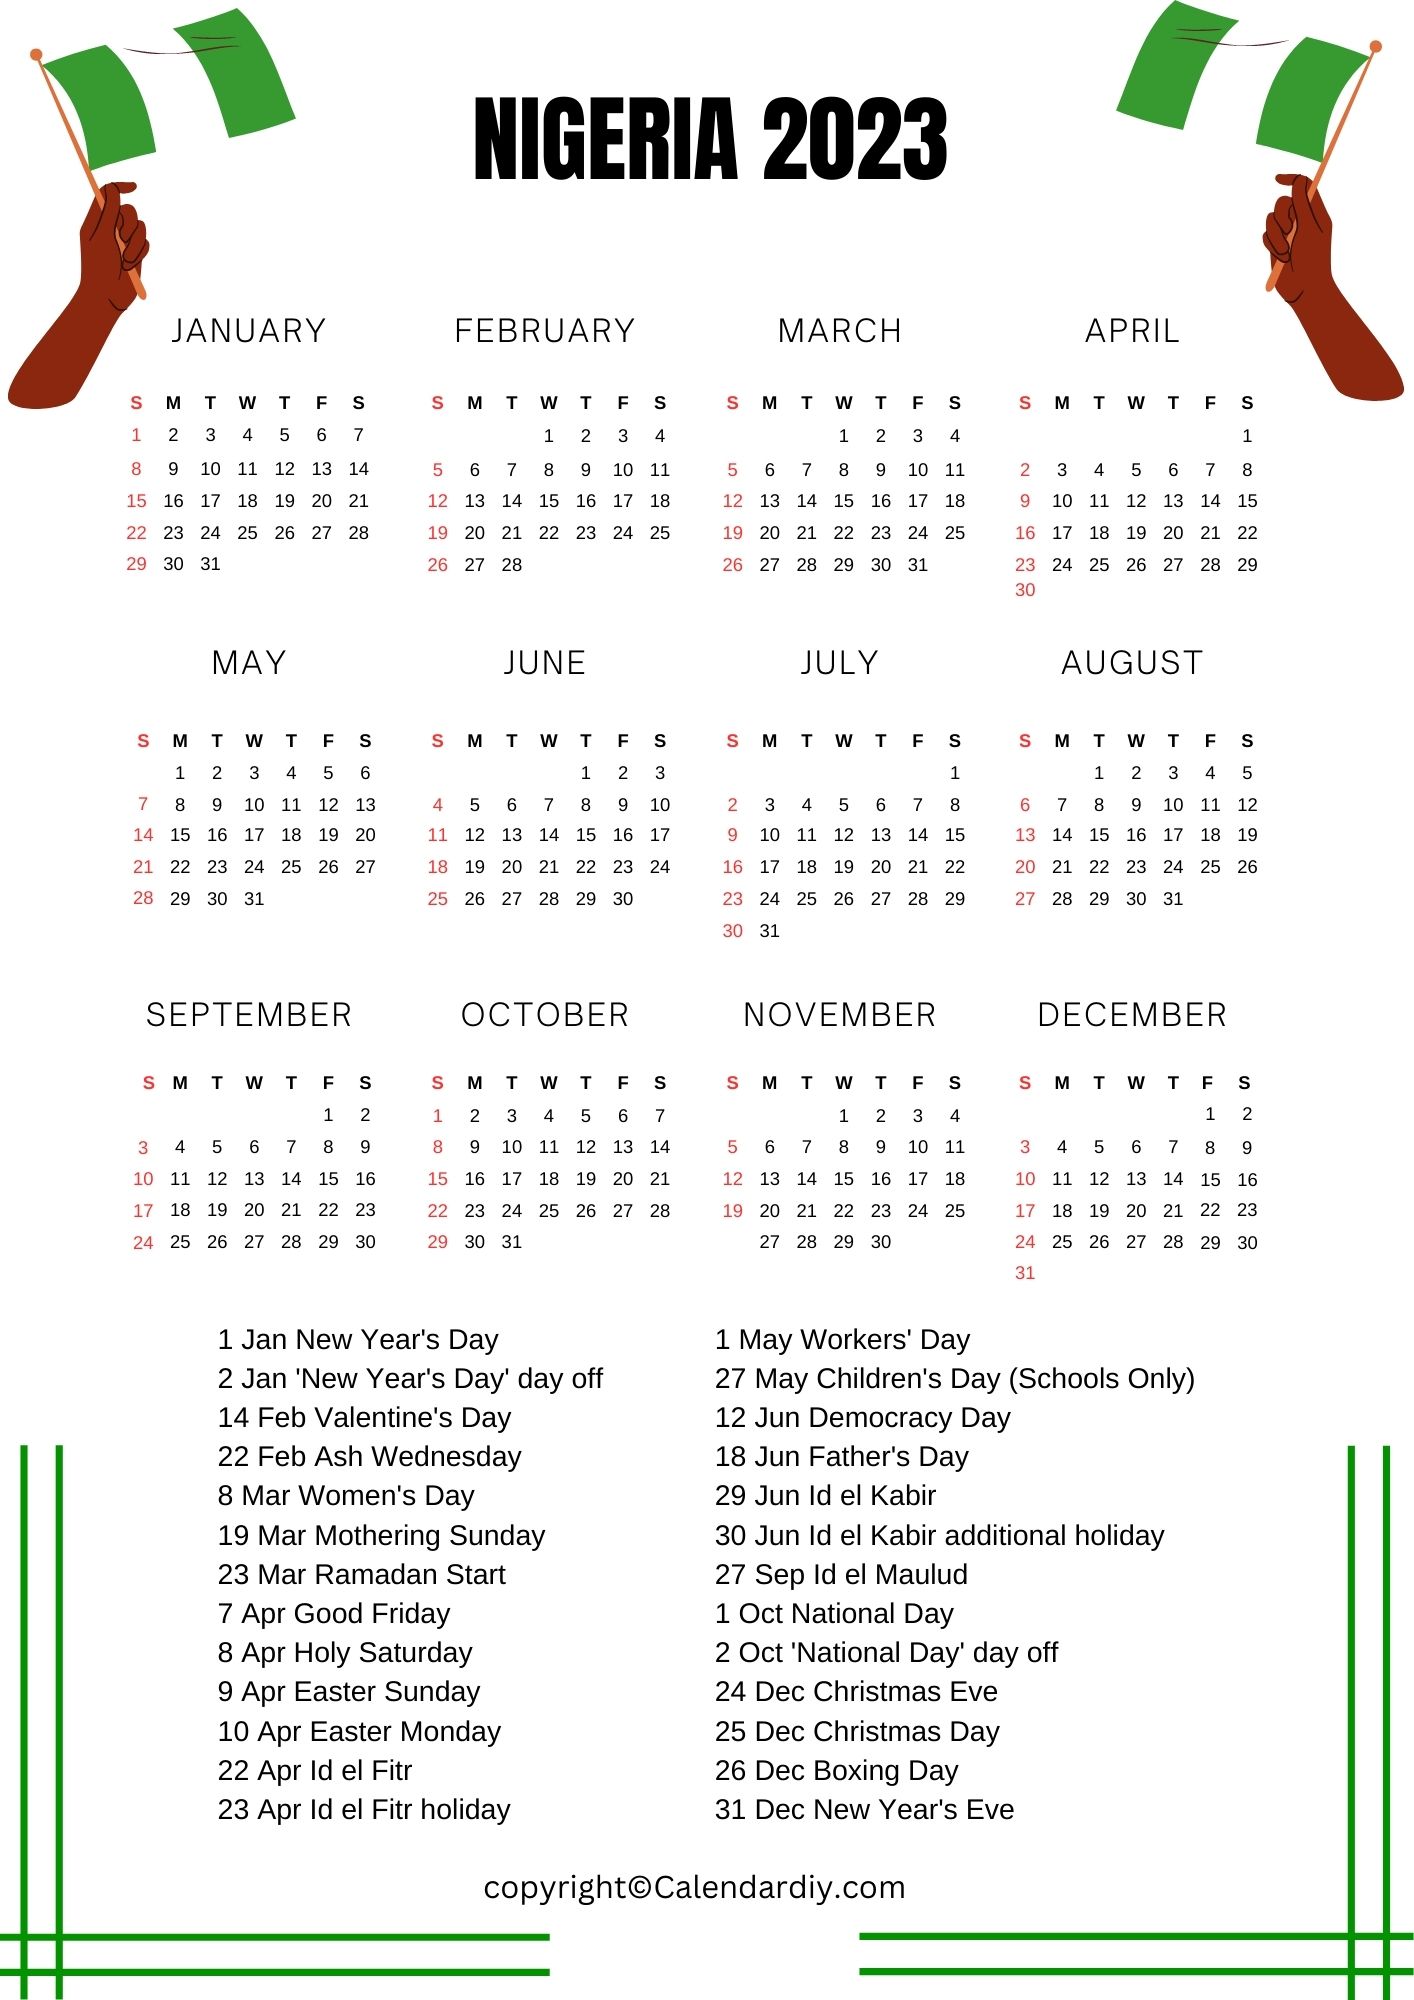 Nigeria 2023 Calendar